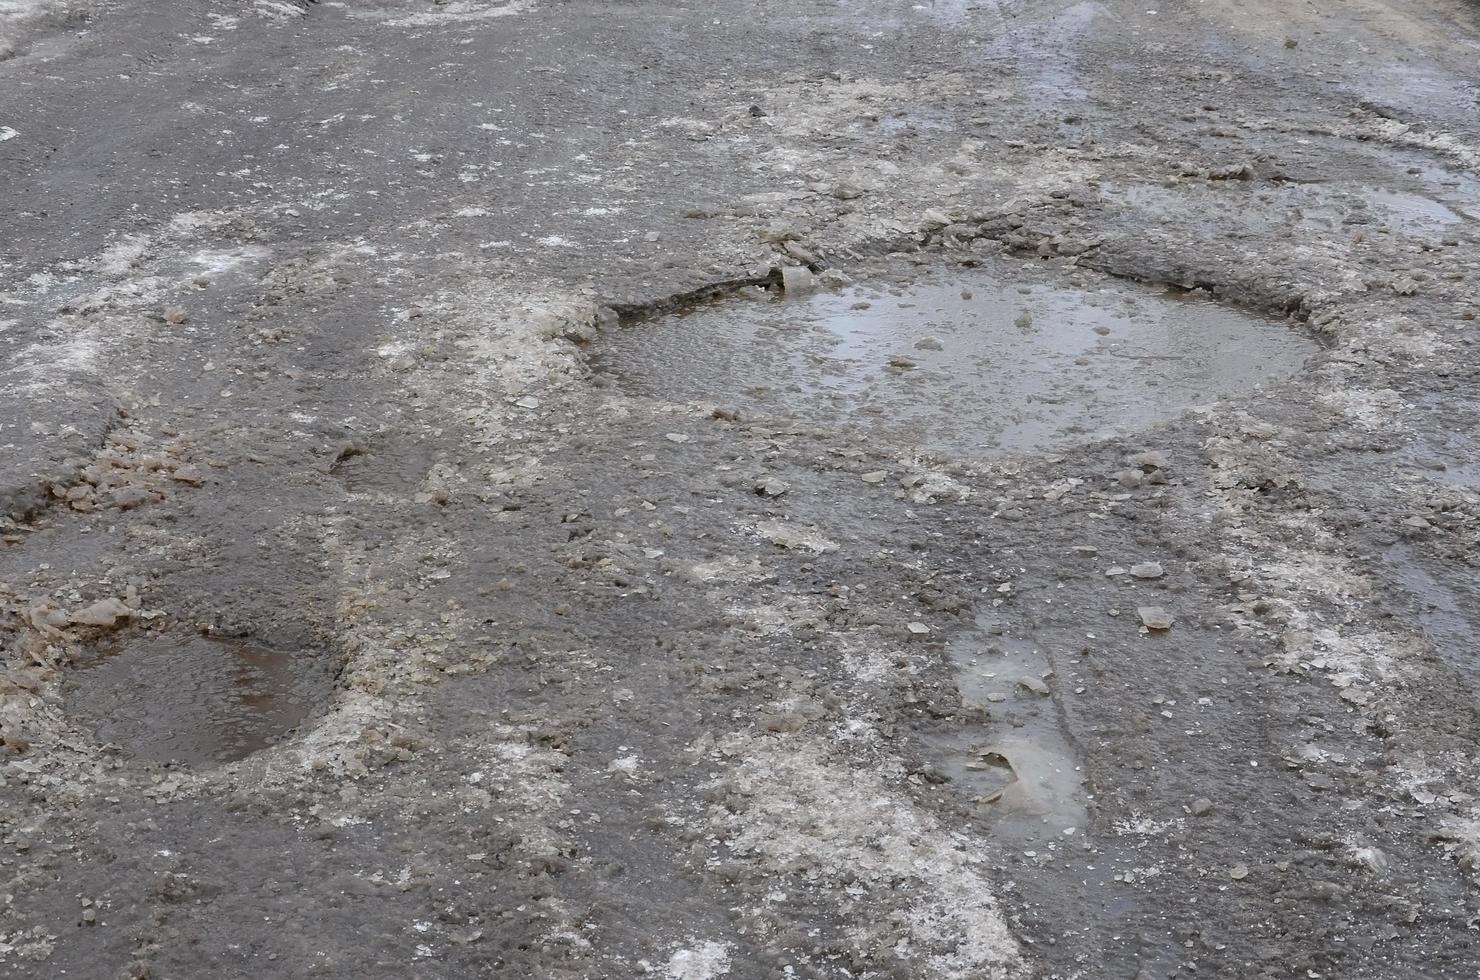 carretera asfaltada dañada con baches causados por los ciclos de congelación y descongelación durante el invierno. mal camino foto